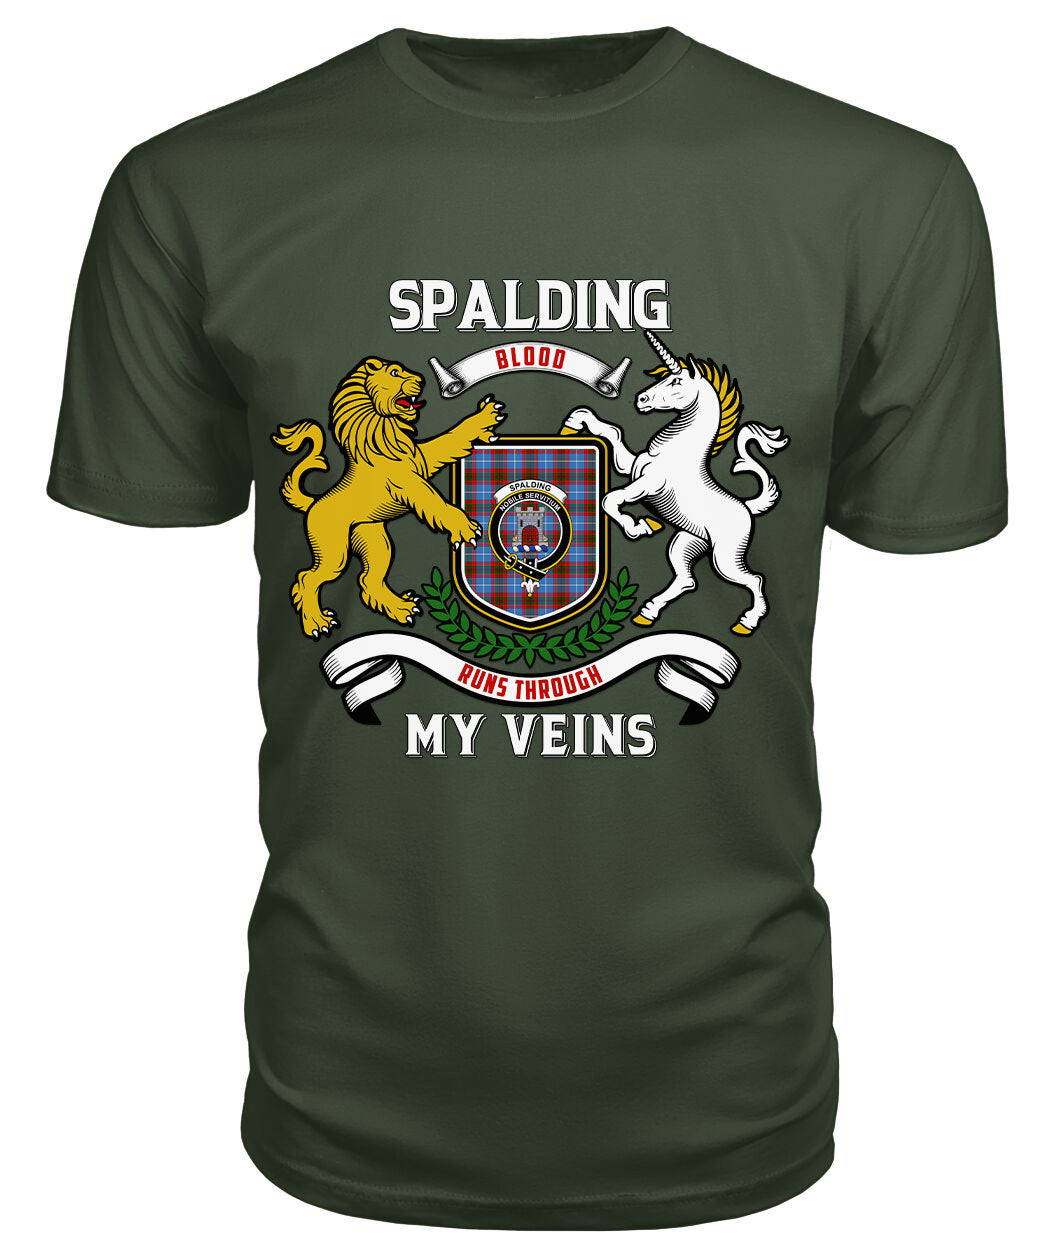 Spalding Tartan Crest 2D T-shirt - Blood Runs Through My Veins Style